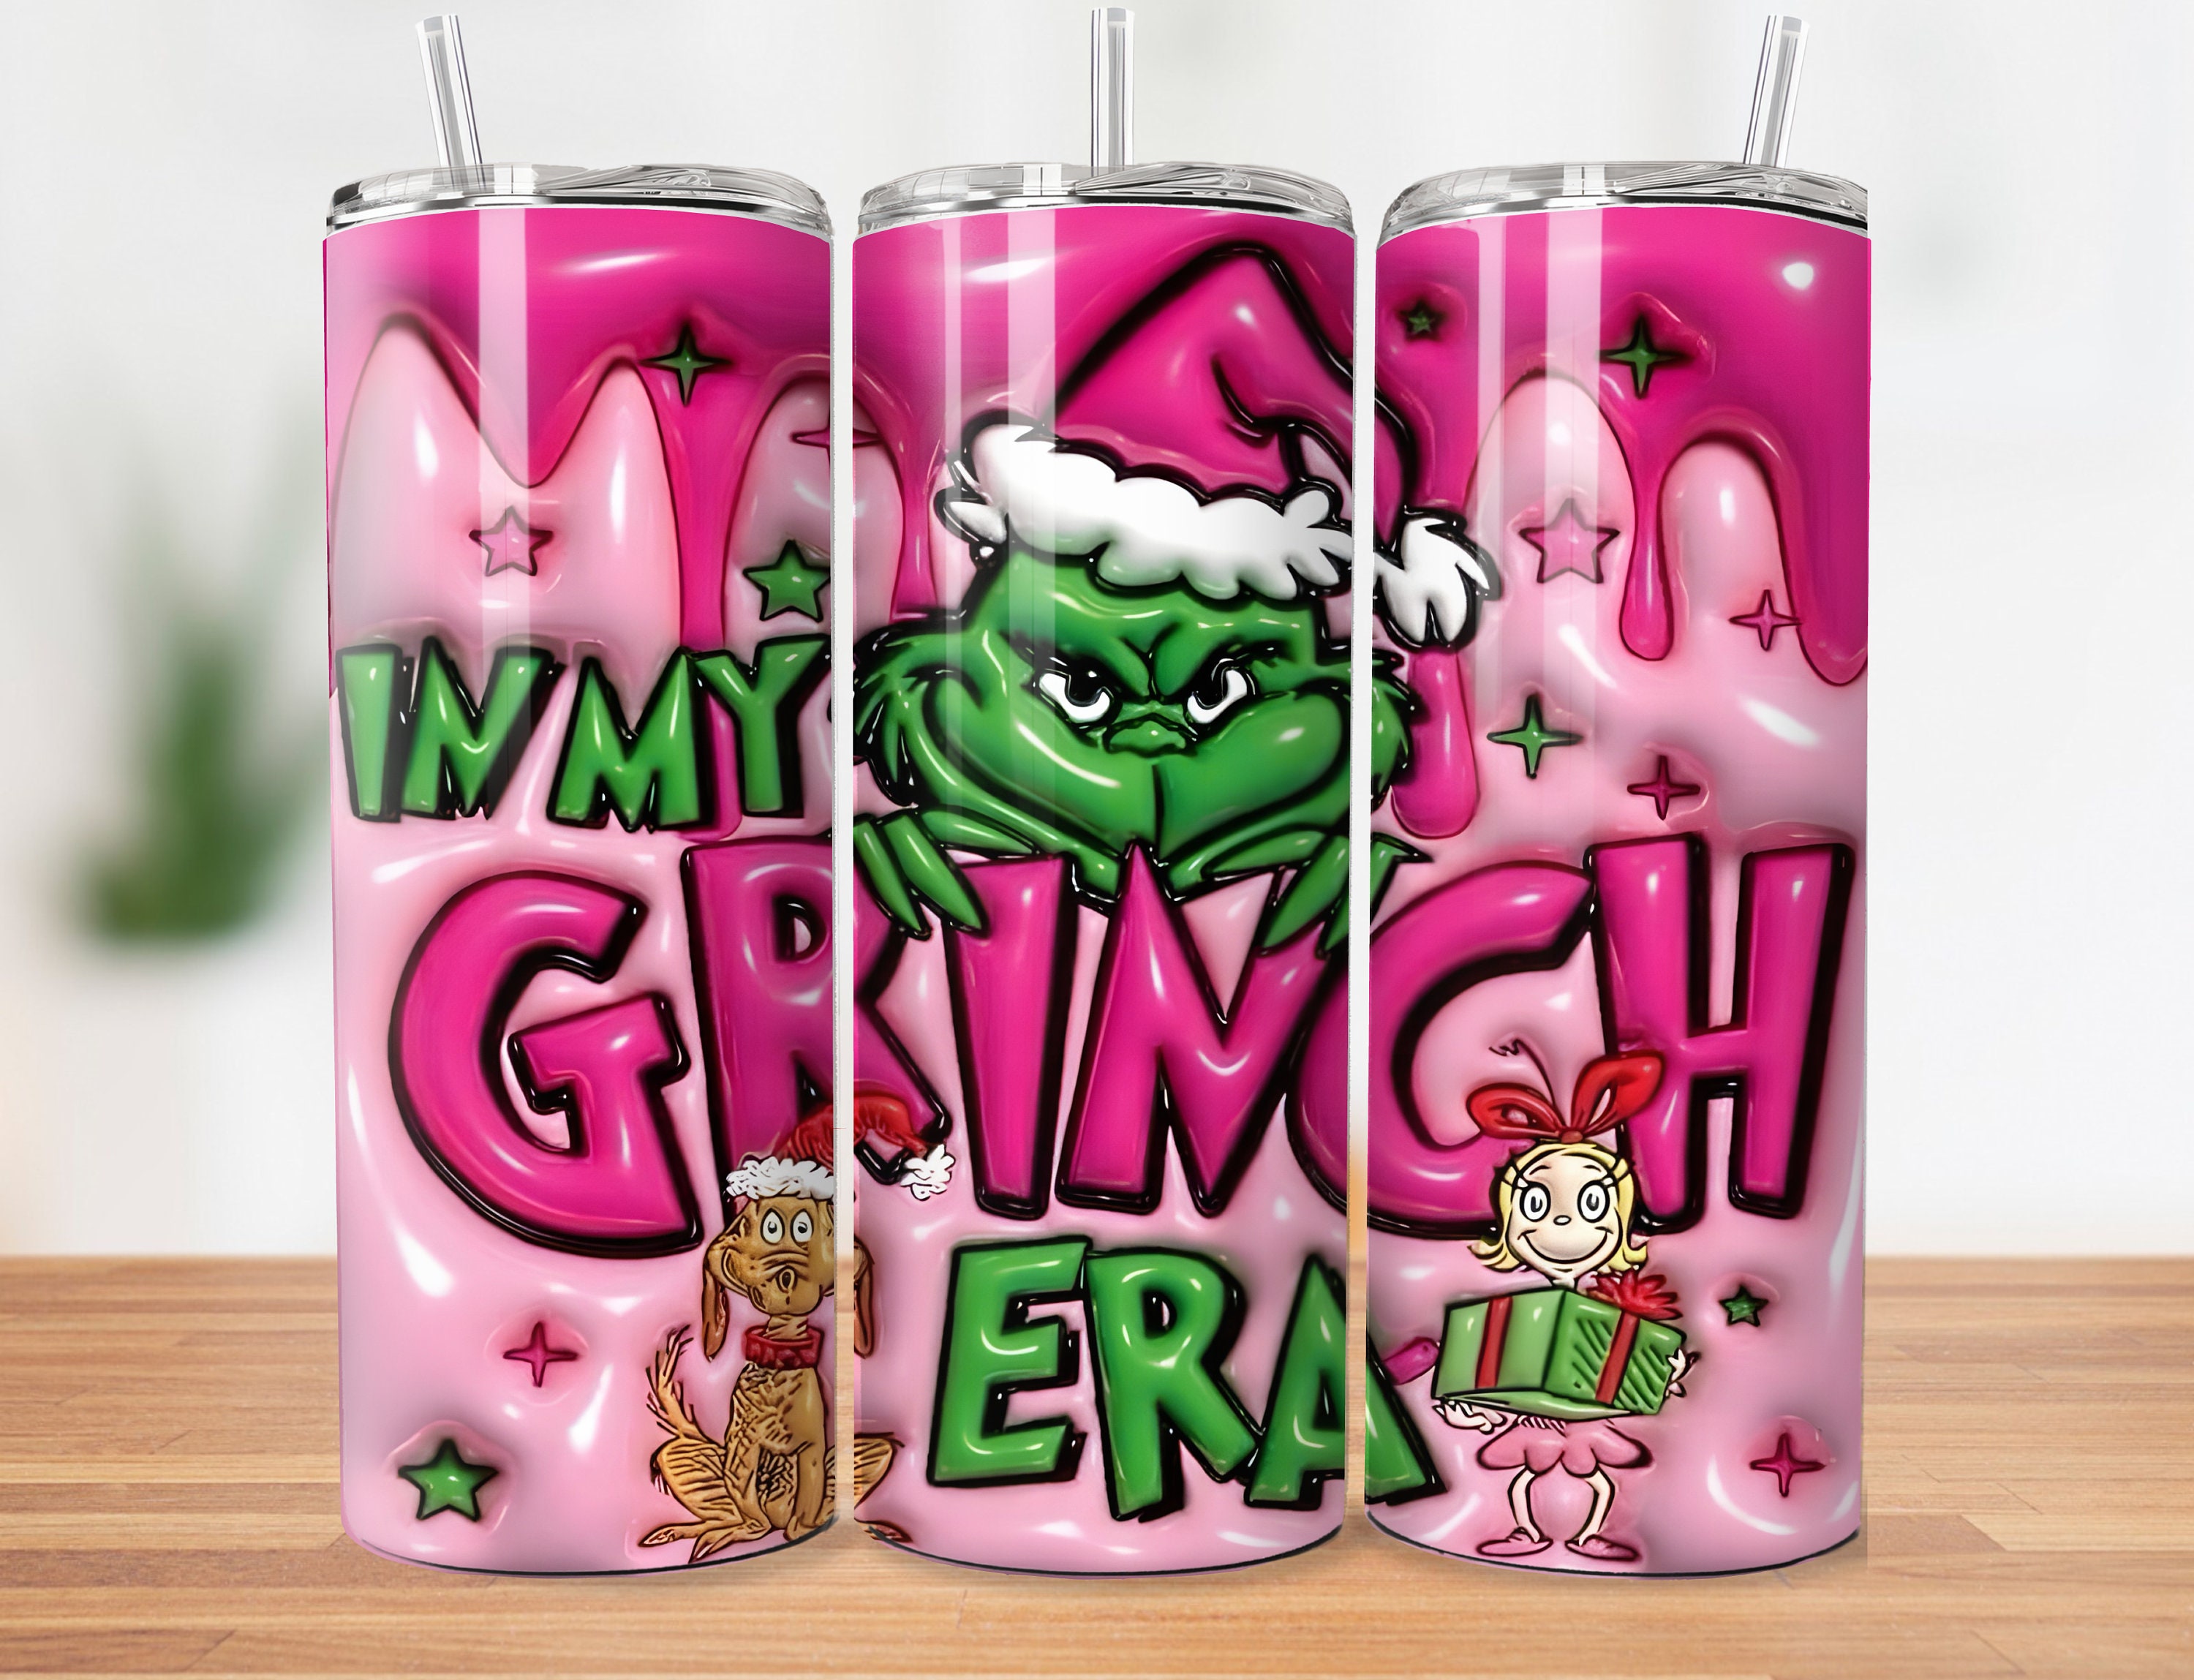 4 Grinch Tumbler Png - Designerpick